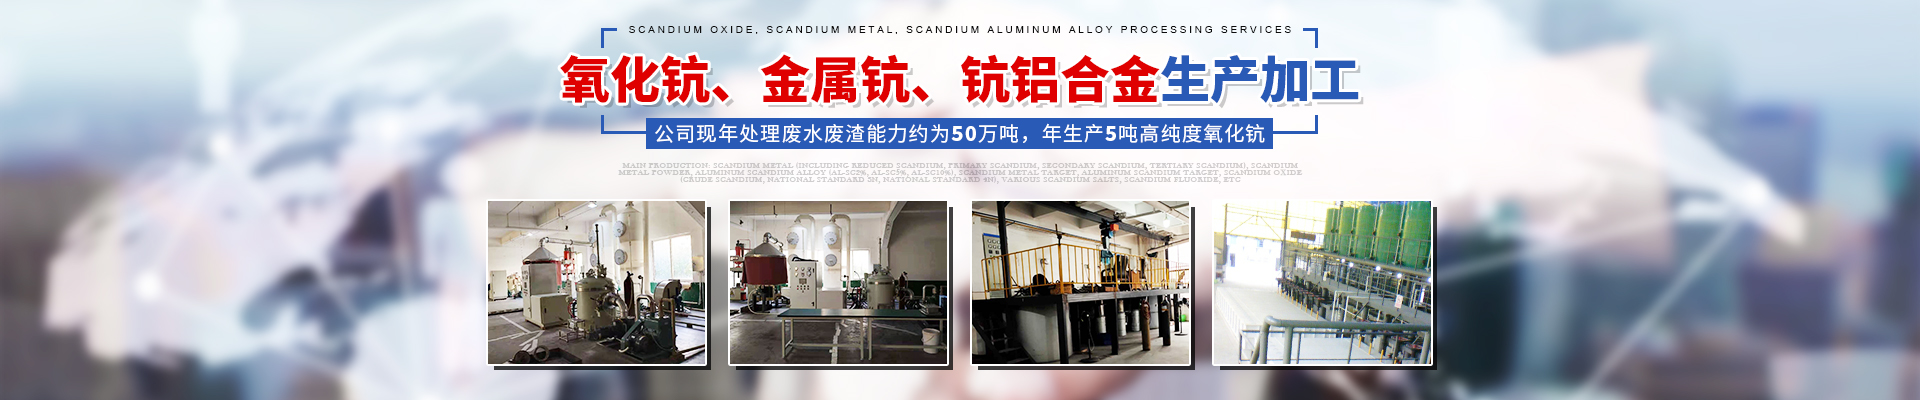 湖南金坤新材料有限公司_株洲氧化鈧等金屬產品的純化精制|鈧合金產品的研究和生產